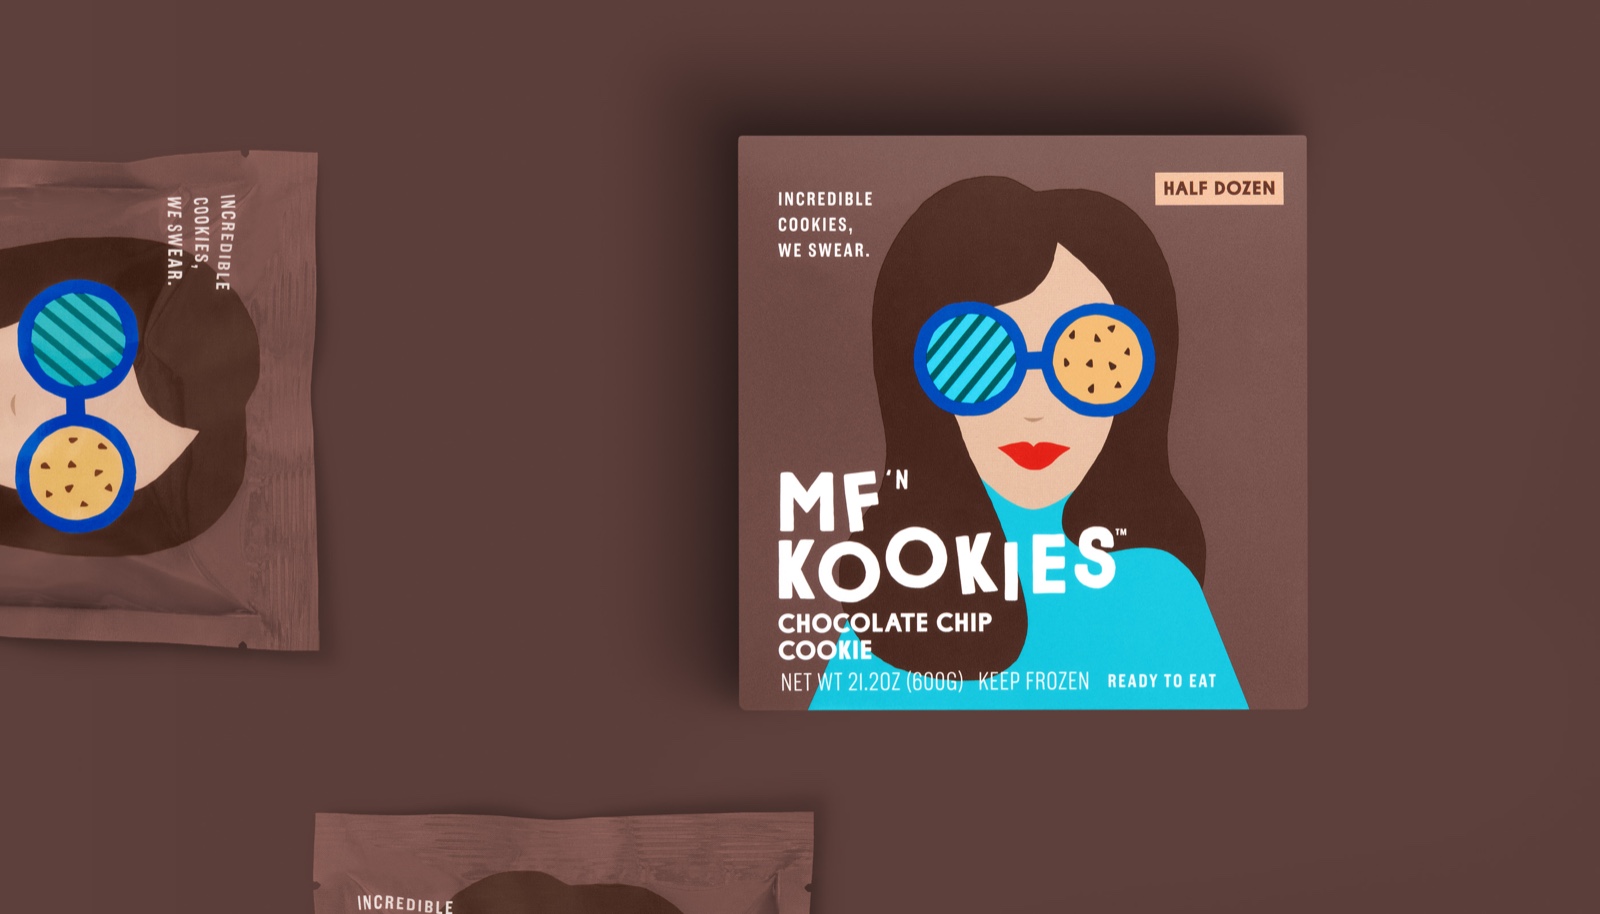 mfkookies-cookie-branding-packaging-design9.jpg